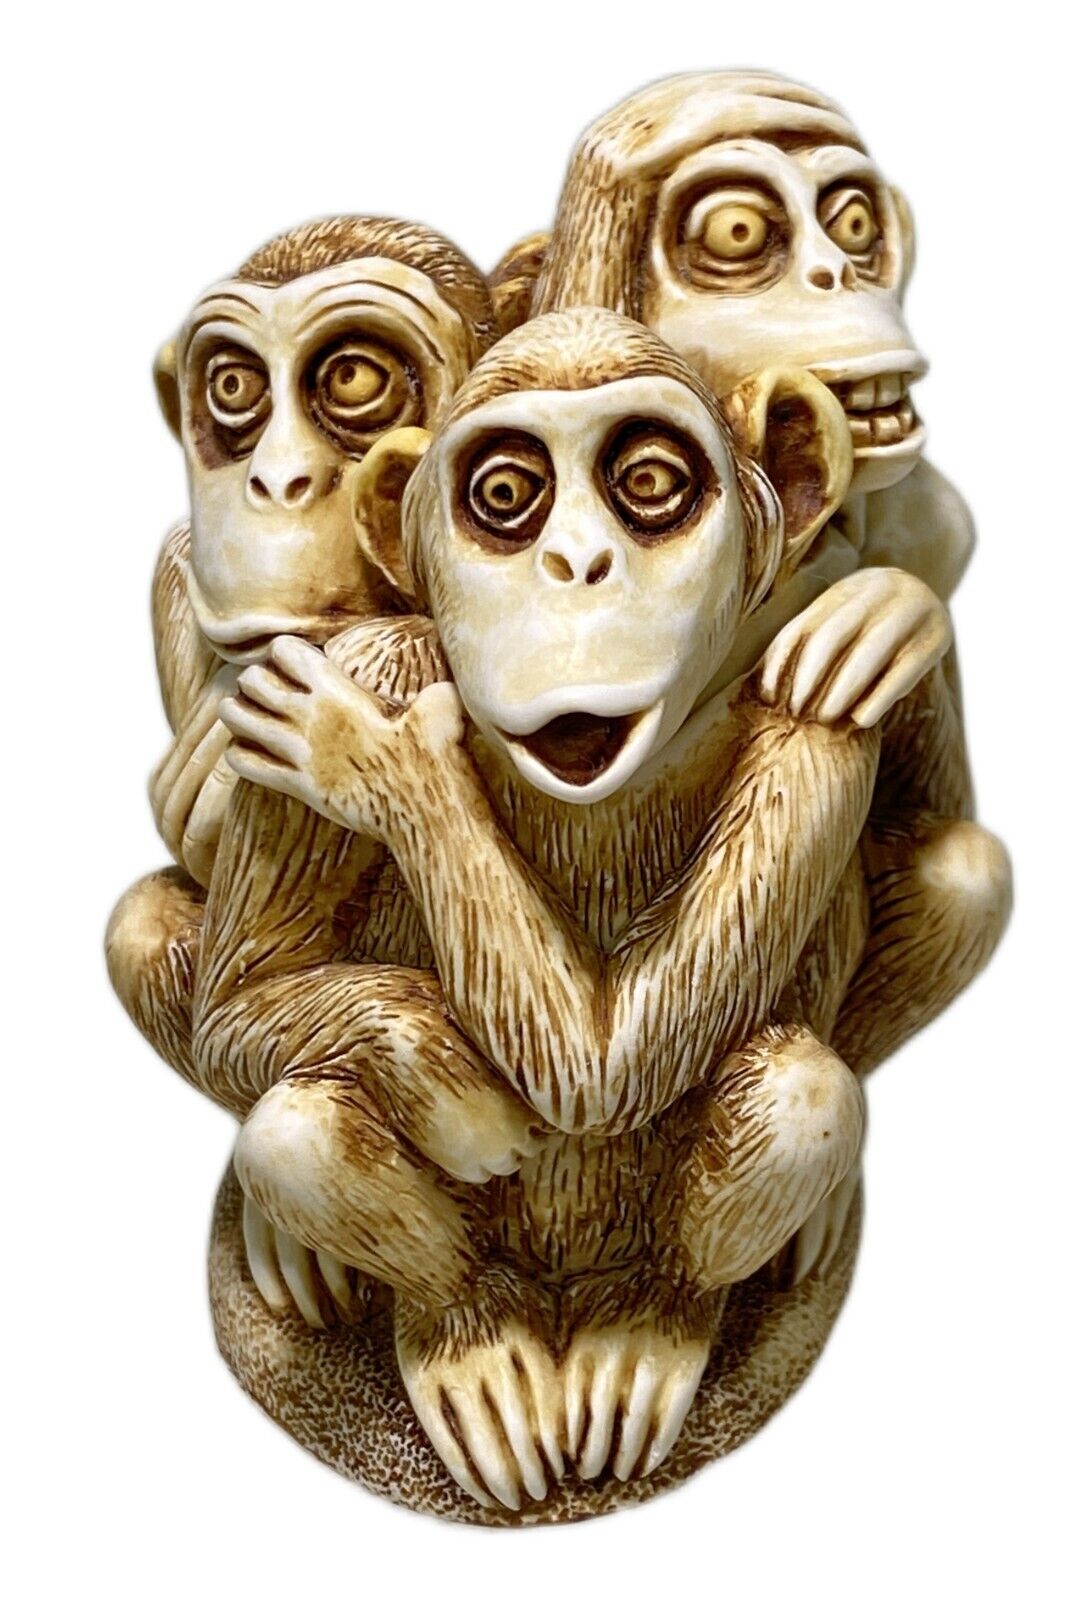 Harmony Kingdom Inside Joke Monkeys Trinket Box Figurine Vtg 1994